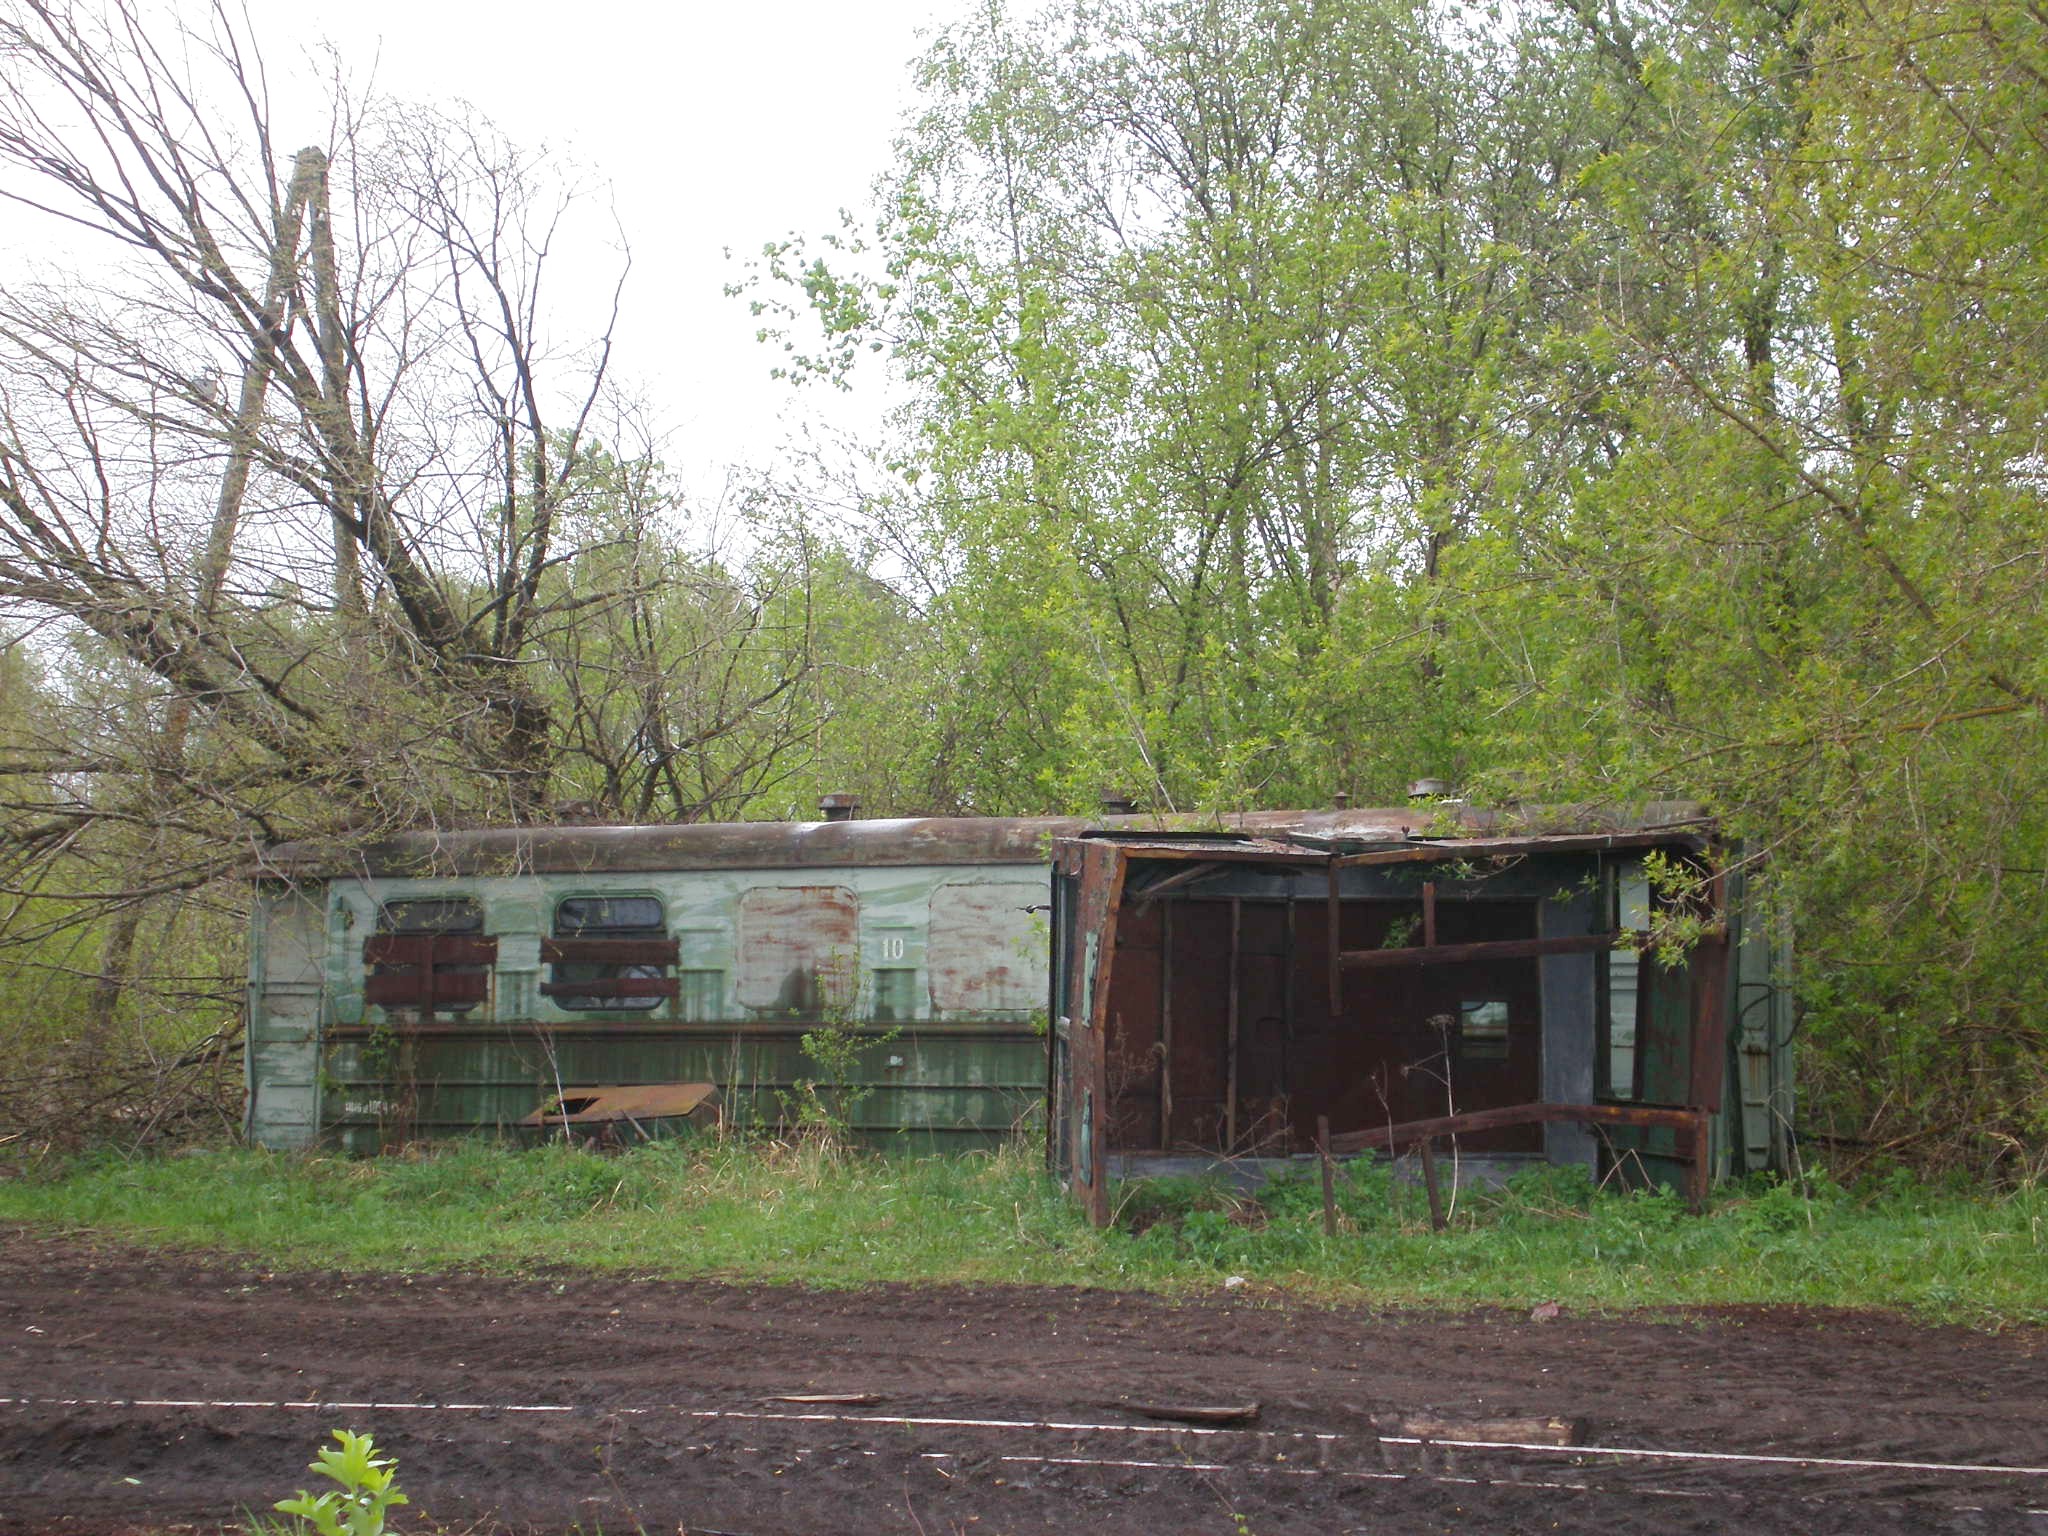 Узкоколейная железная дорога Васильевского предприятия промышленного железнодорожного транспорта  — фотографии, сделанные в 2008 году (часть 2)